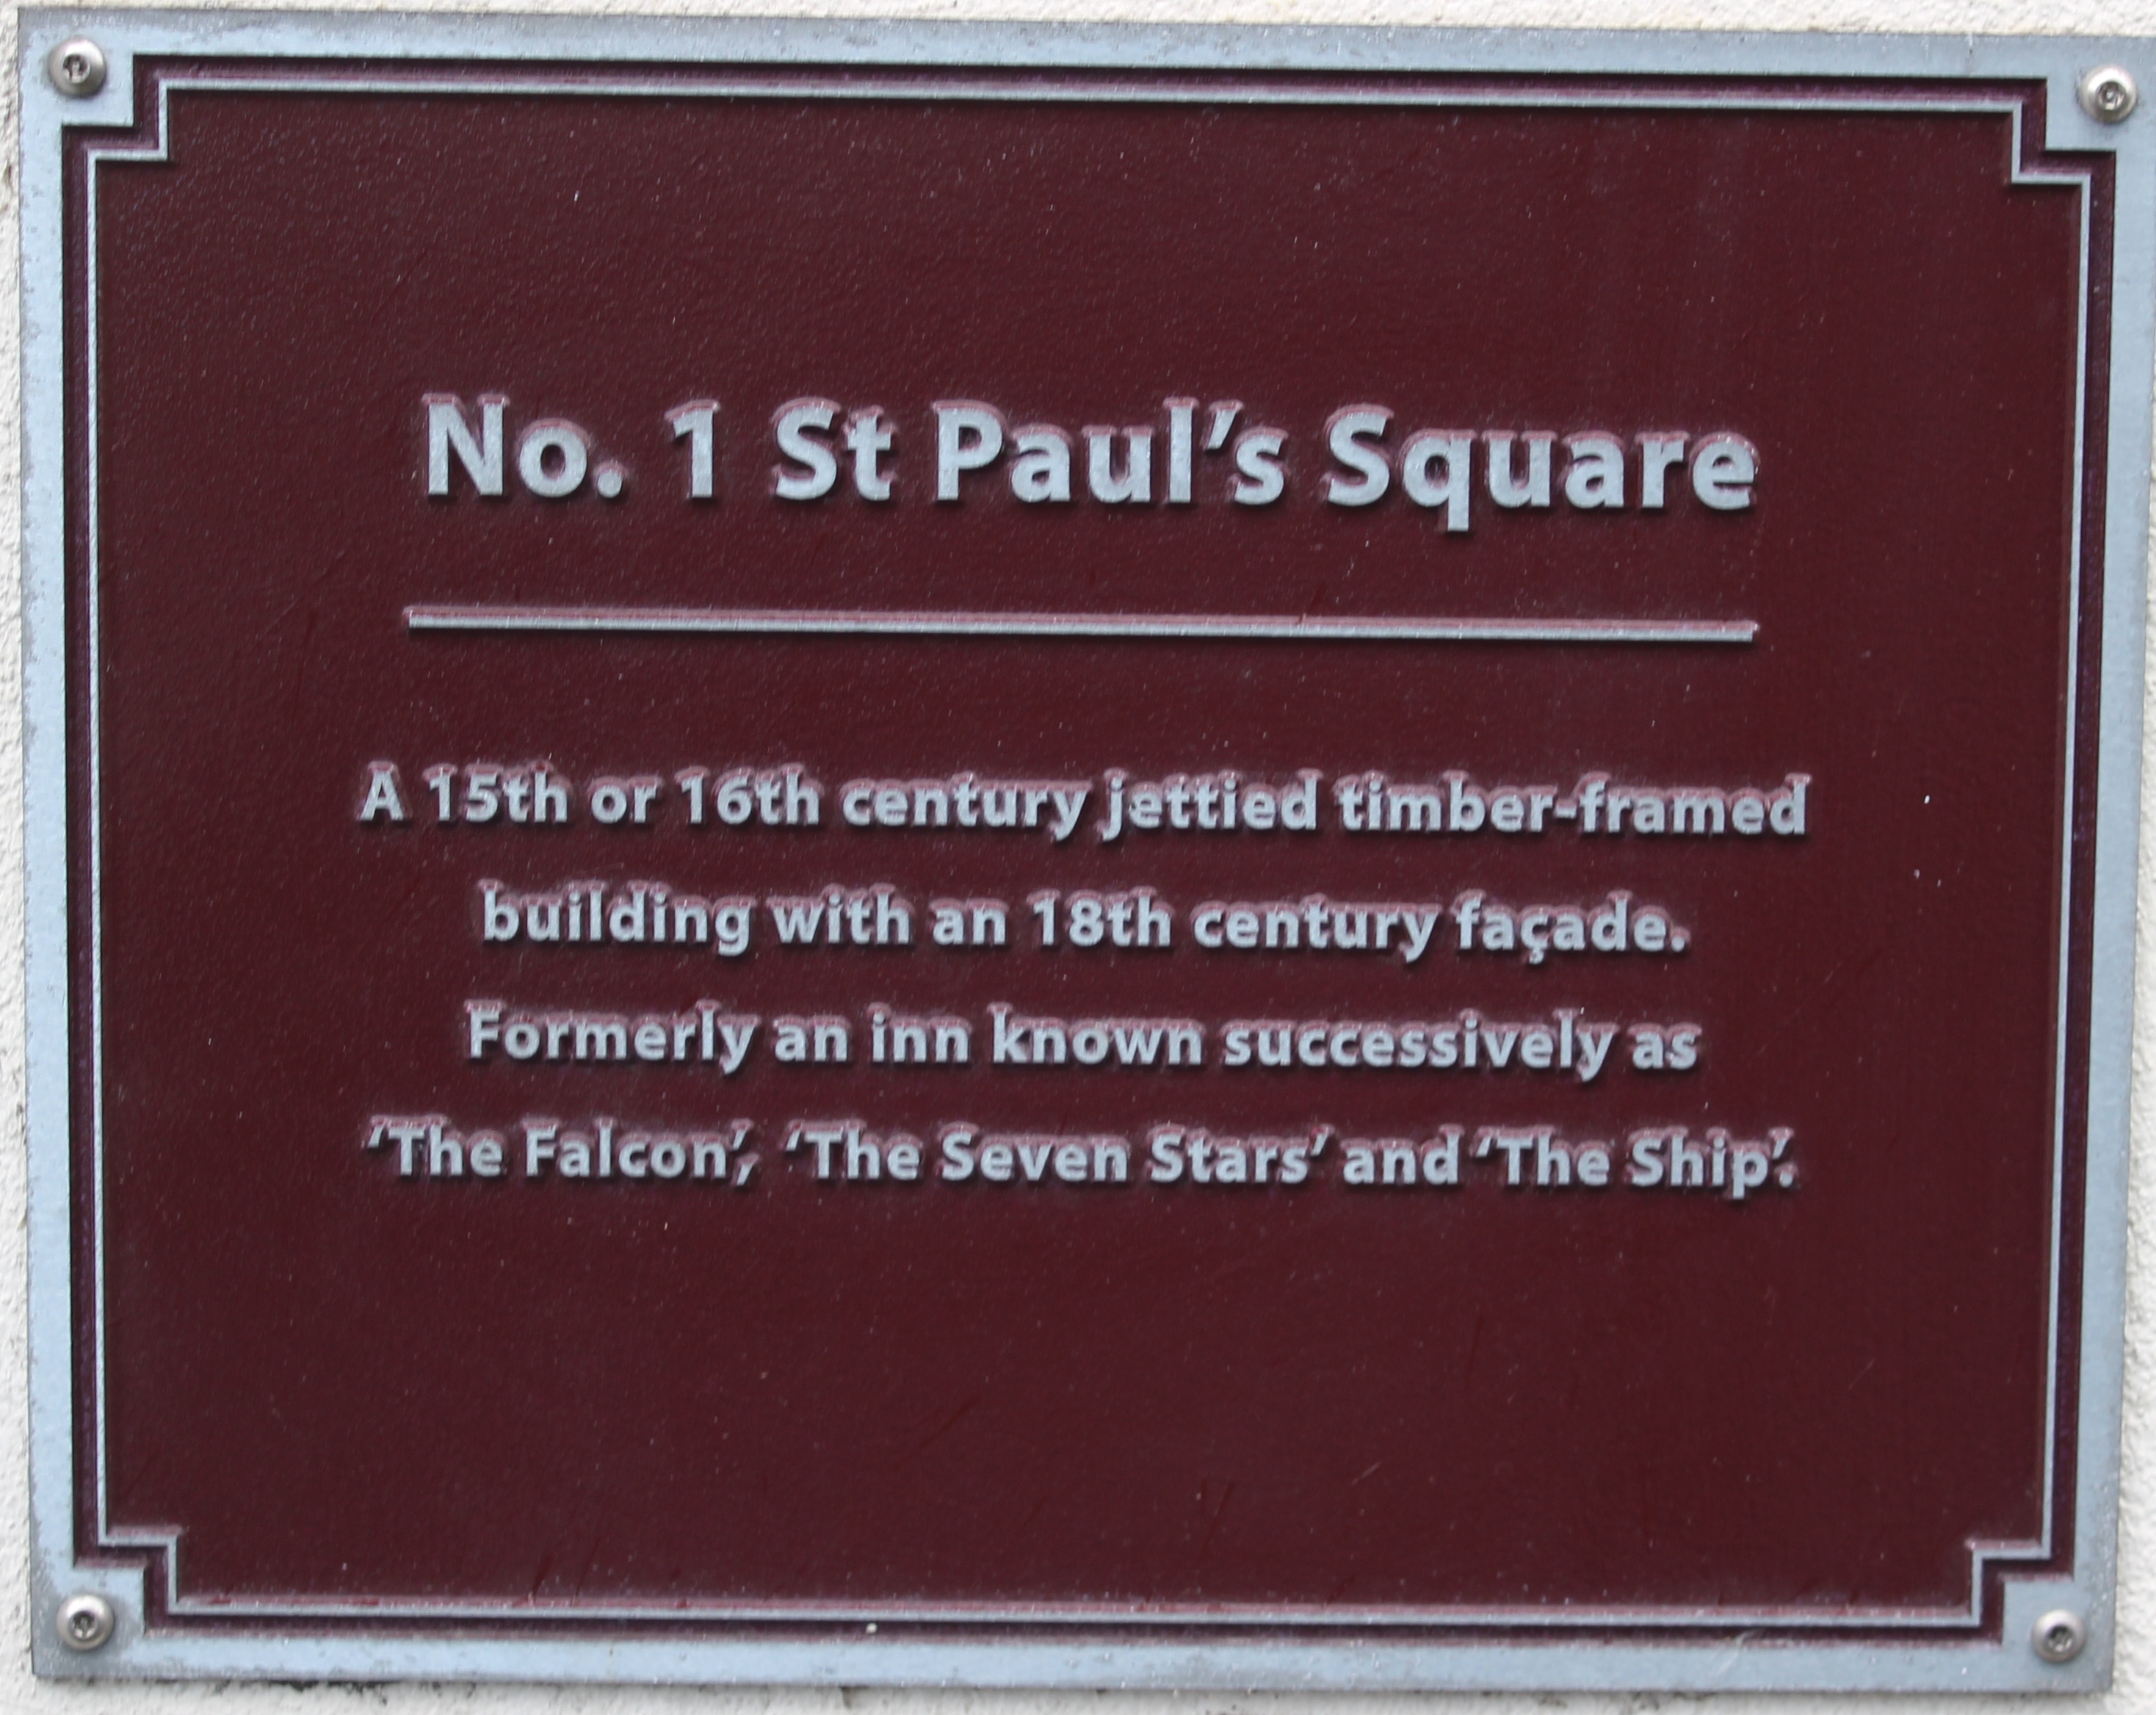 No 1 St Paul's Square commemorative plaque